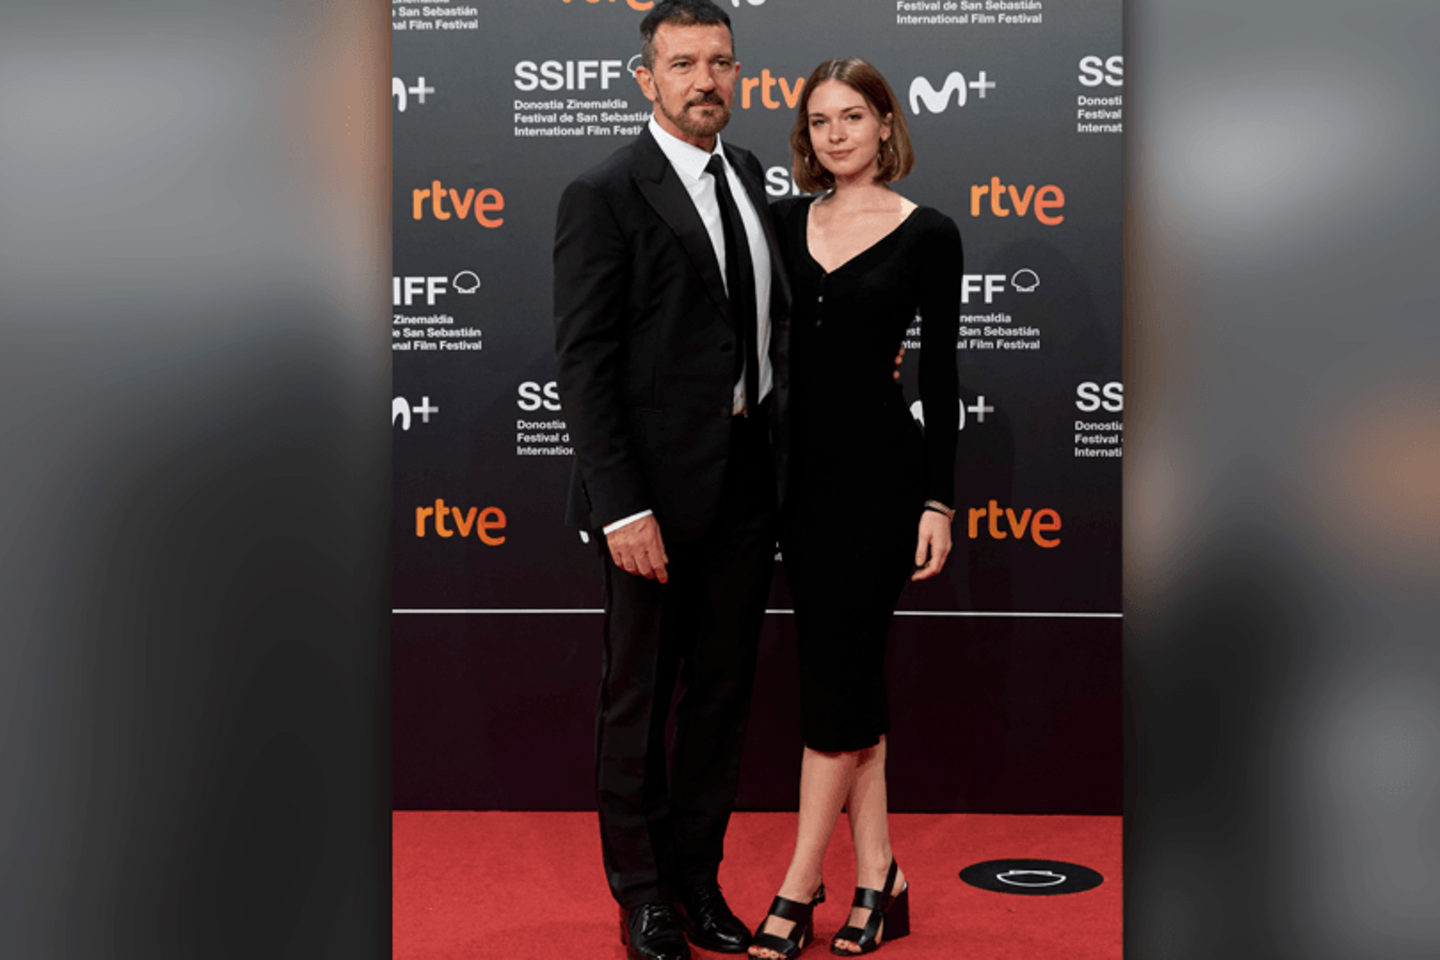 Antonio Banderas und Tochter Stella auf dem Roten Teppich der Filmfestspiele von San Sebastian 2021.